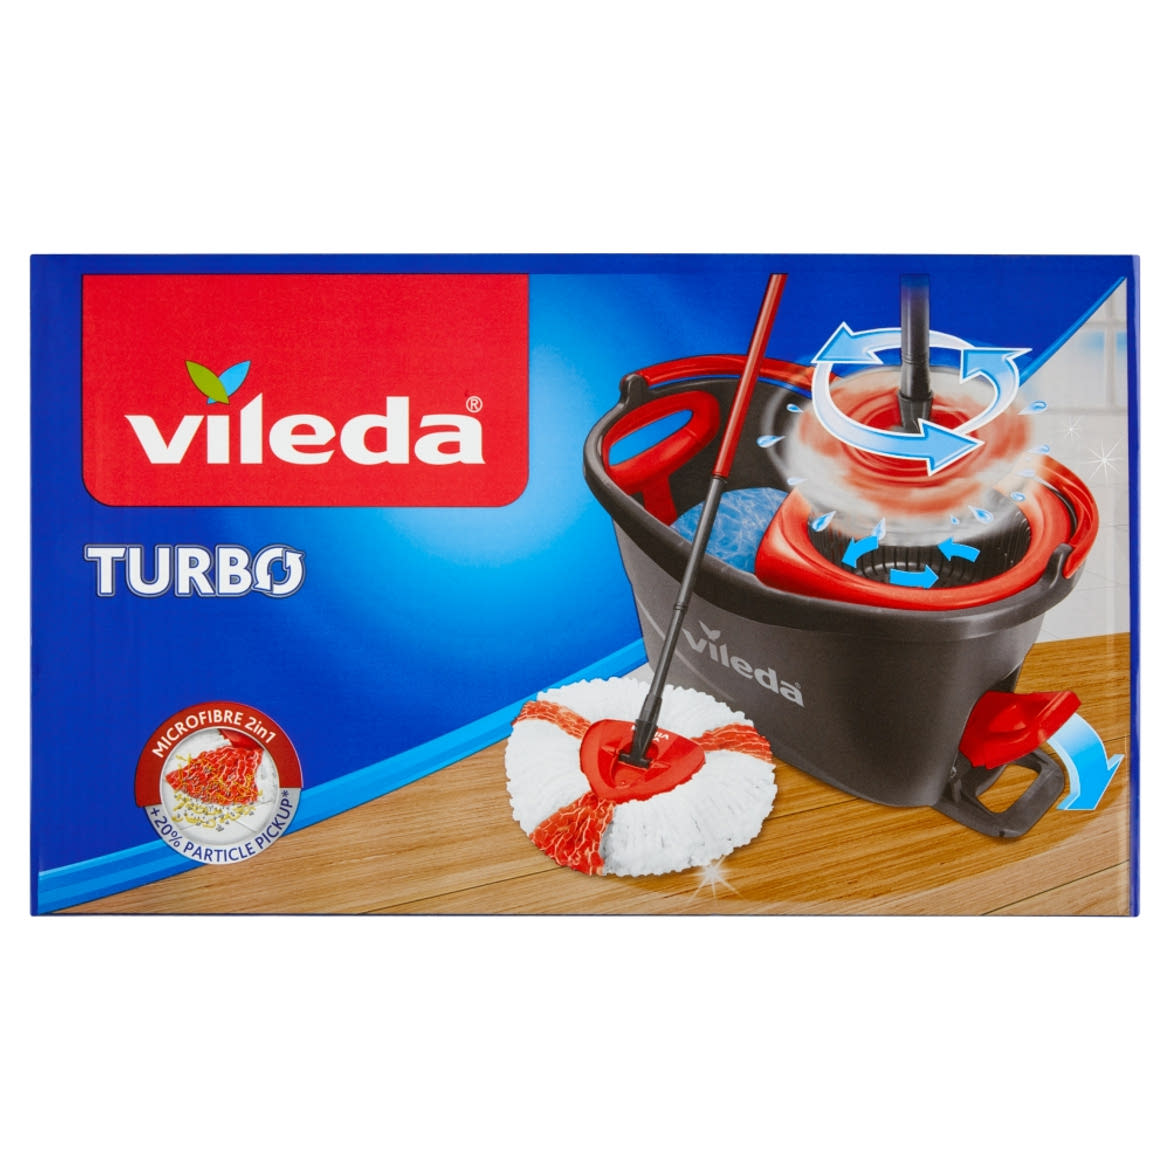 Vileda Turbo gyorsfelmosó szett